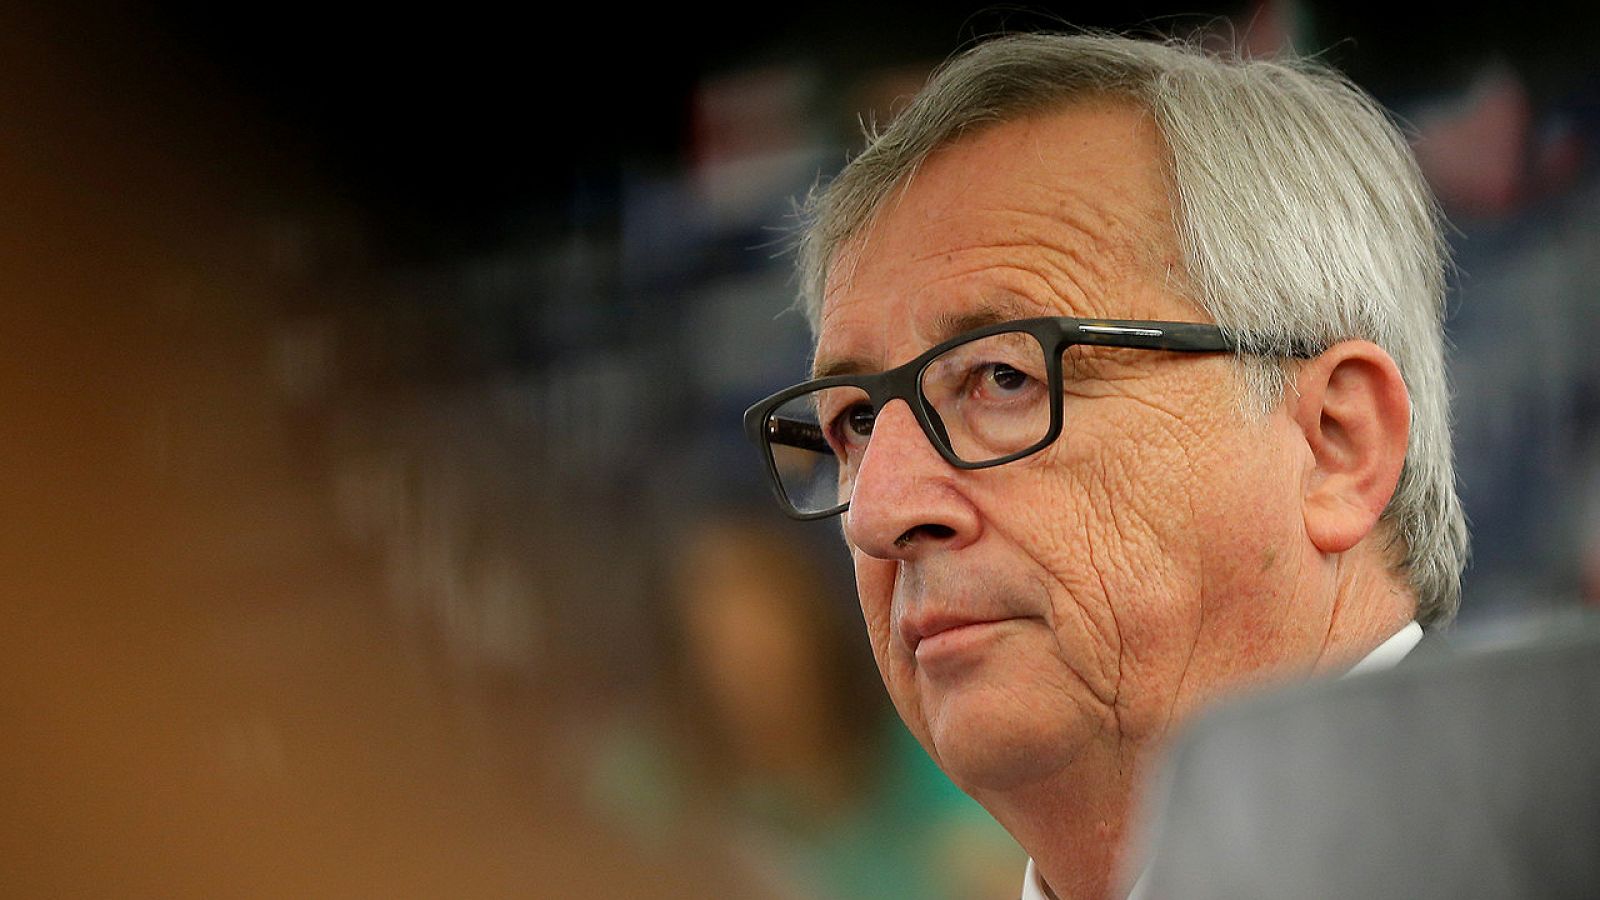 El presidente de la Comisión Europea, Jean-Claude Juncker, durante un debate en el Parlamento Europeo en Estrasburgo, el 5 de julio de 2016. REUTERS/Vincent Kessler